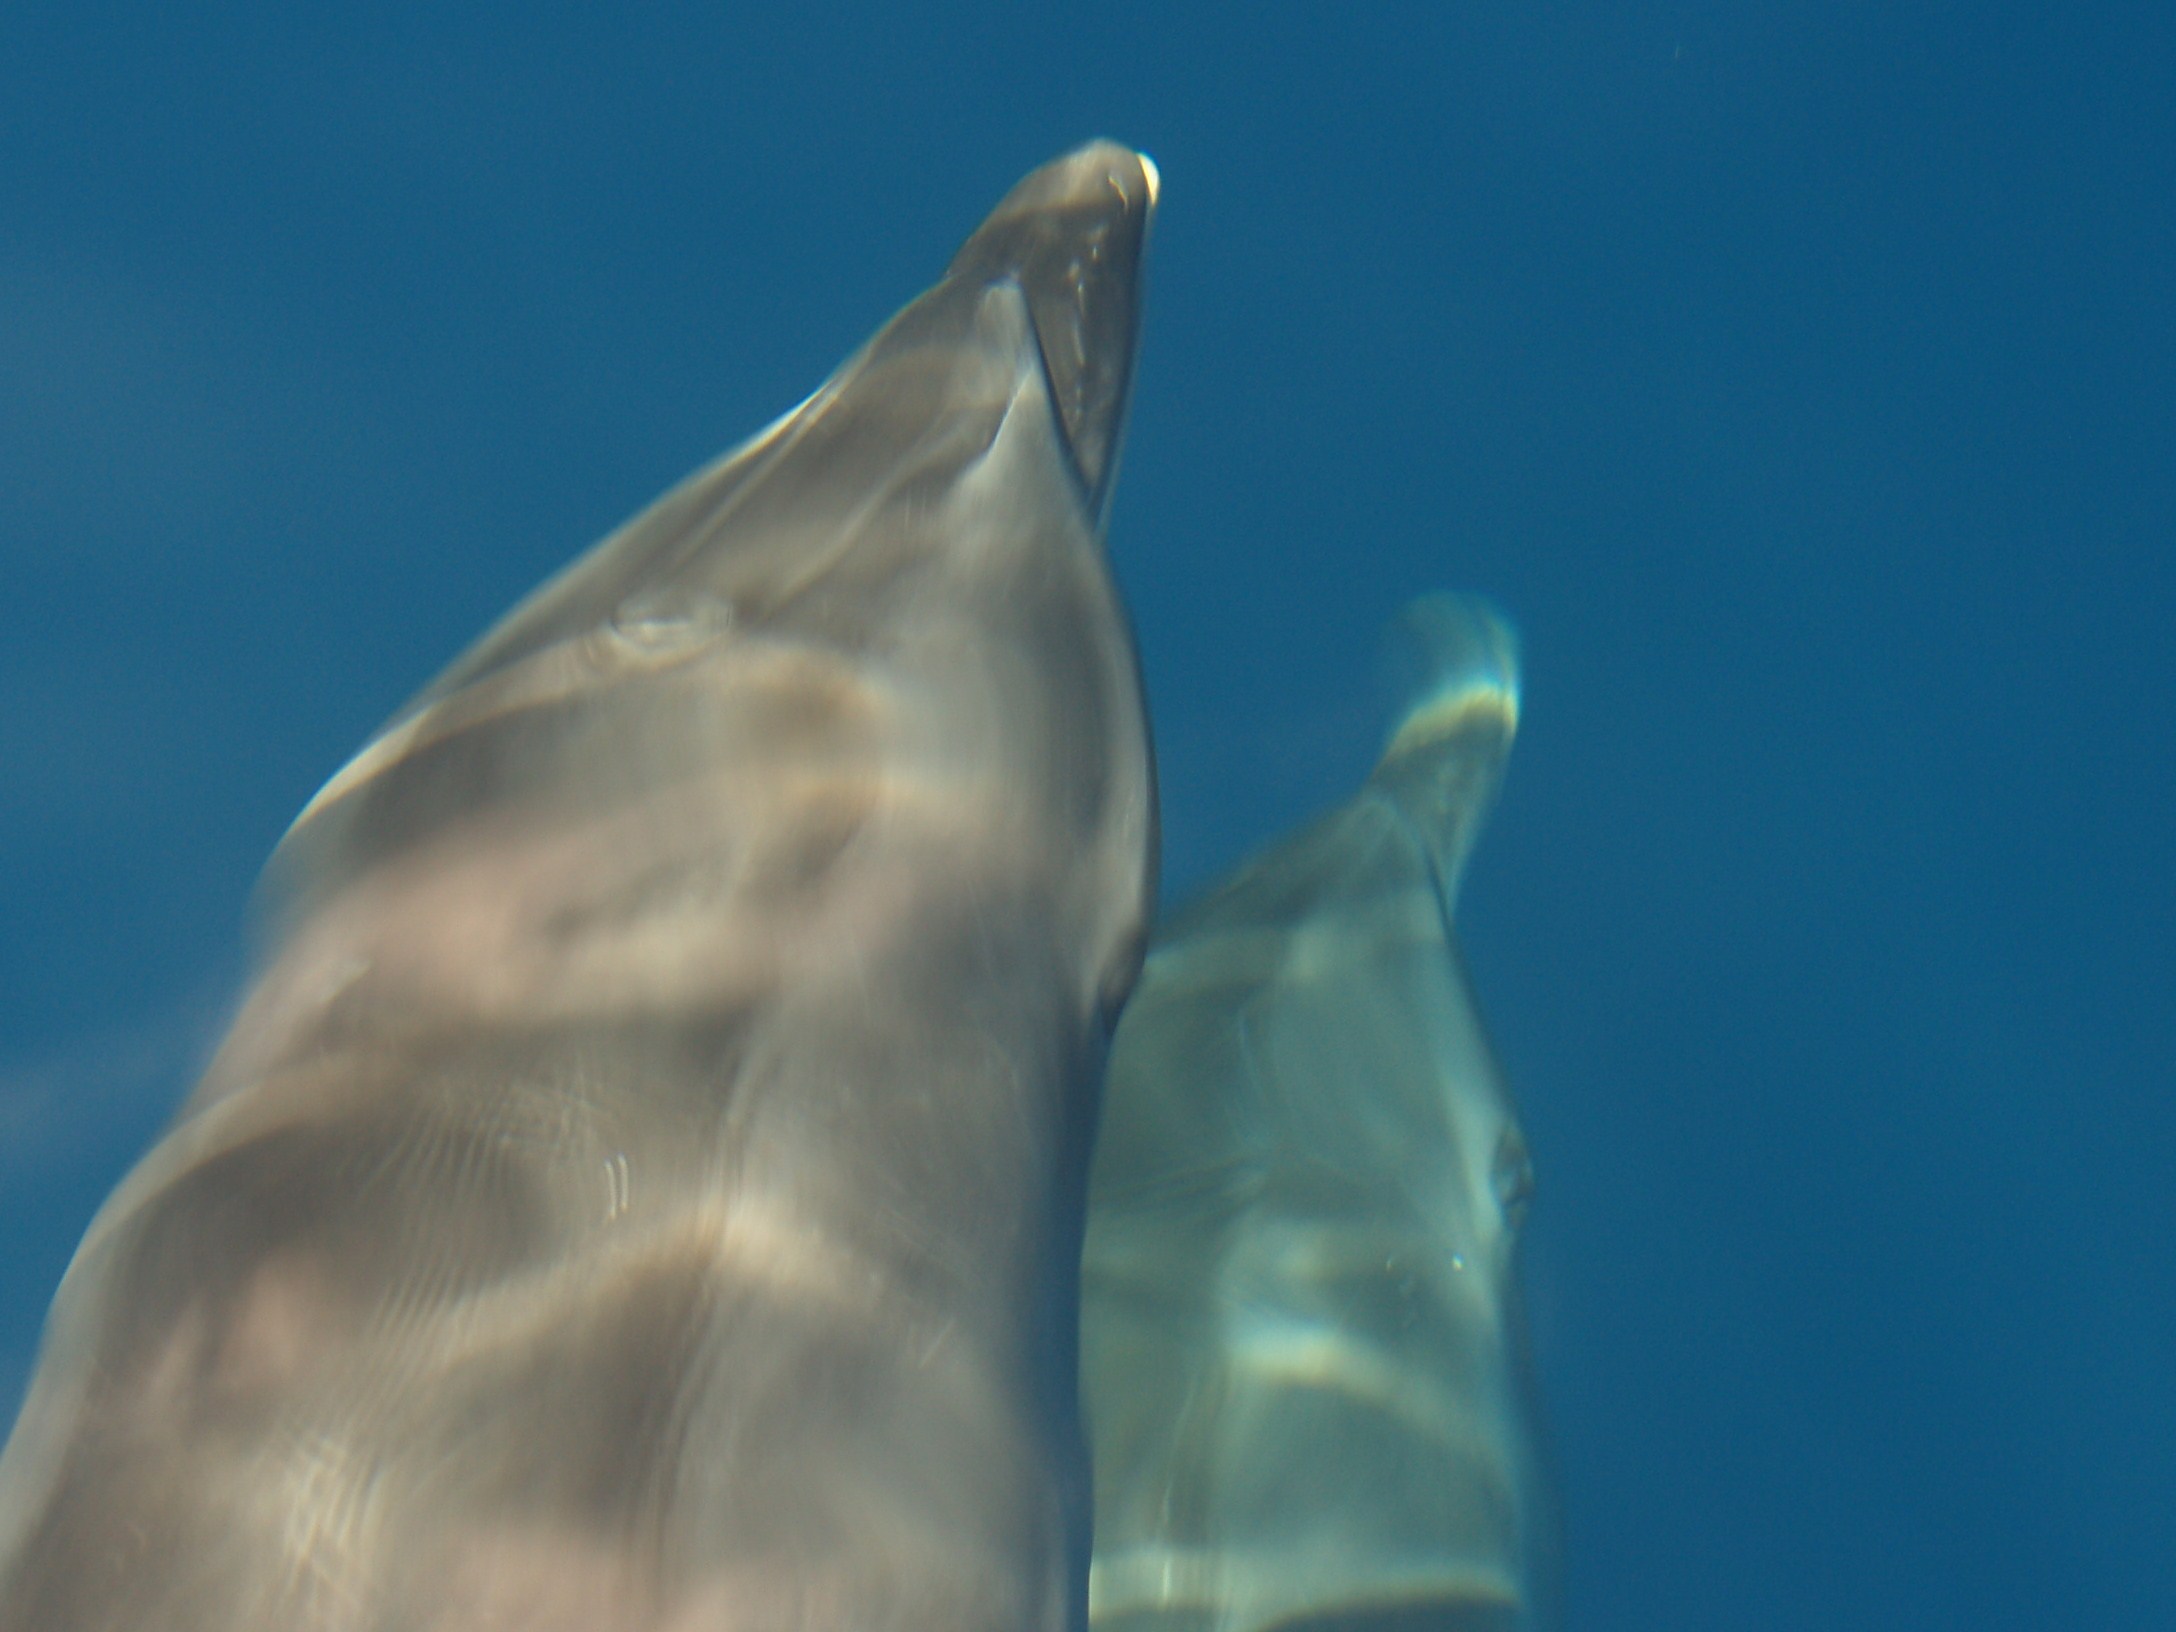 Bermudian Bottlenose dolphins